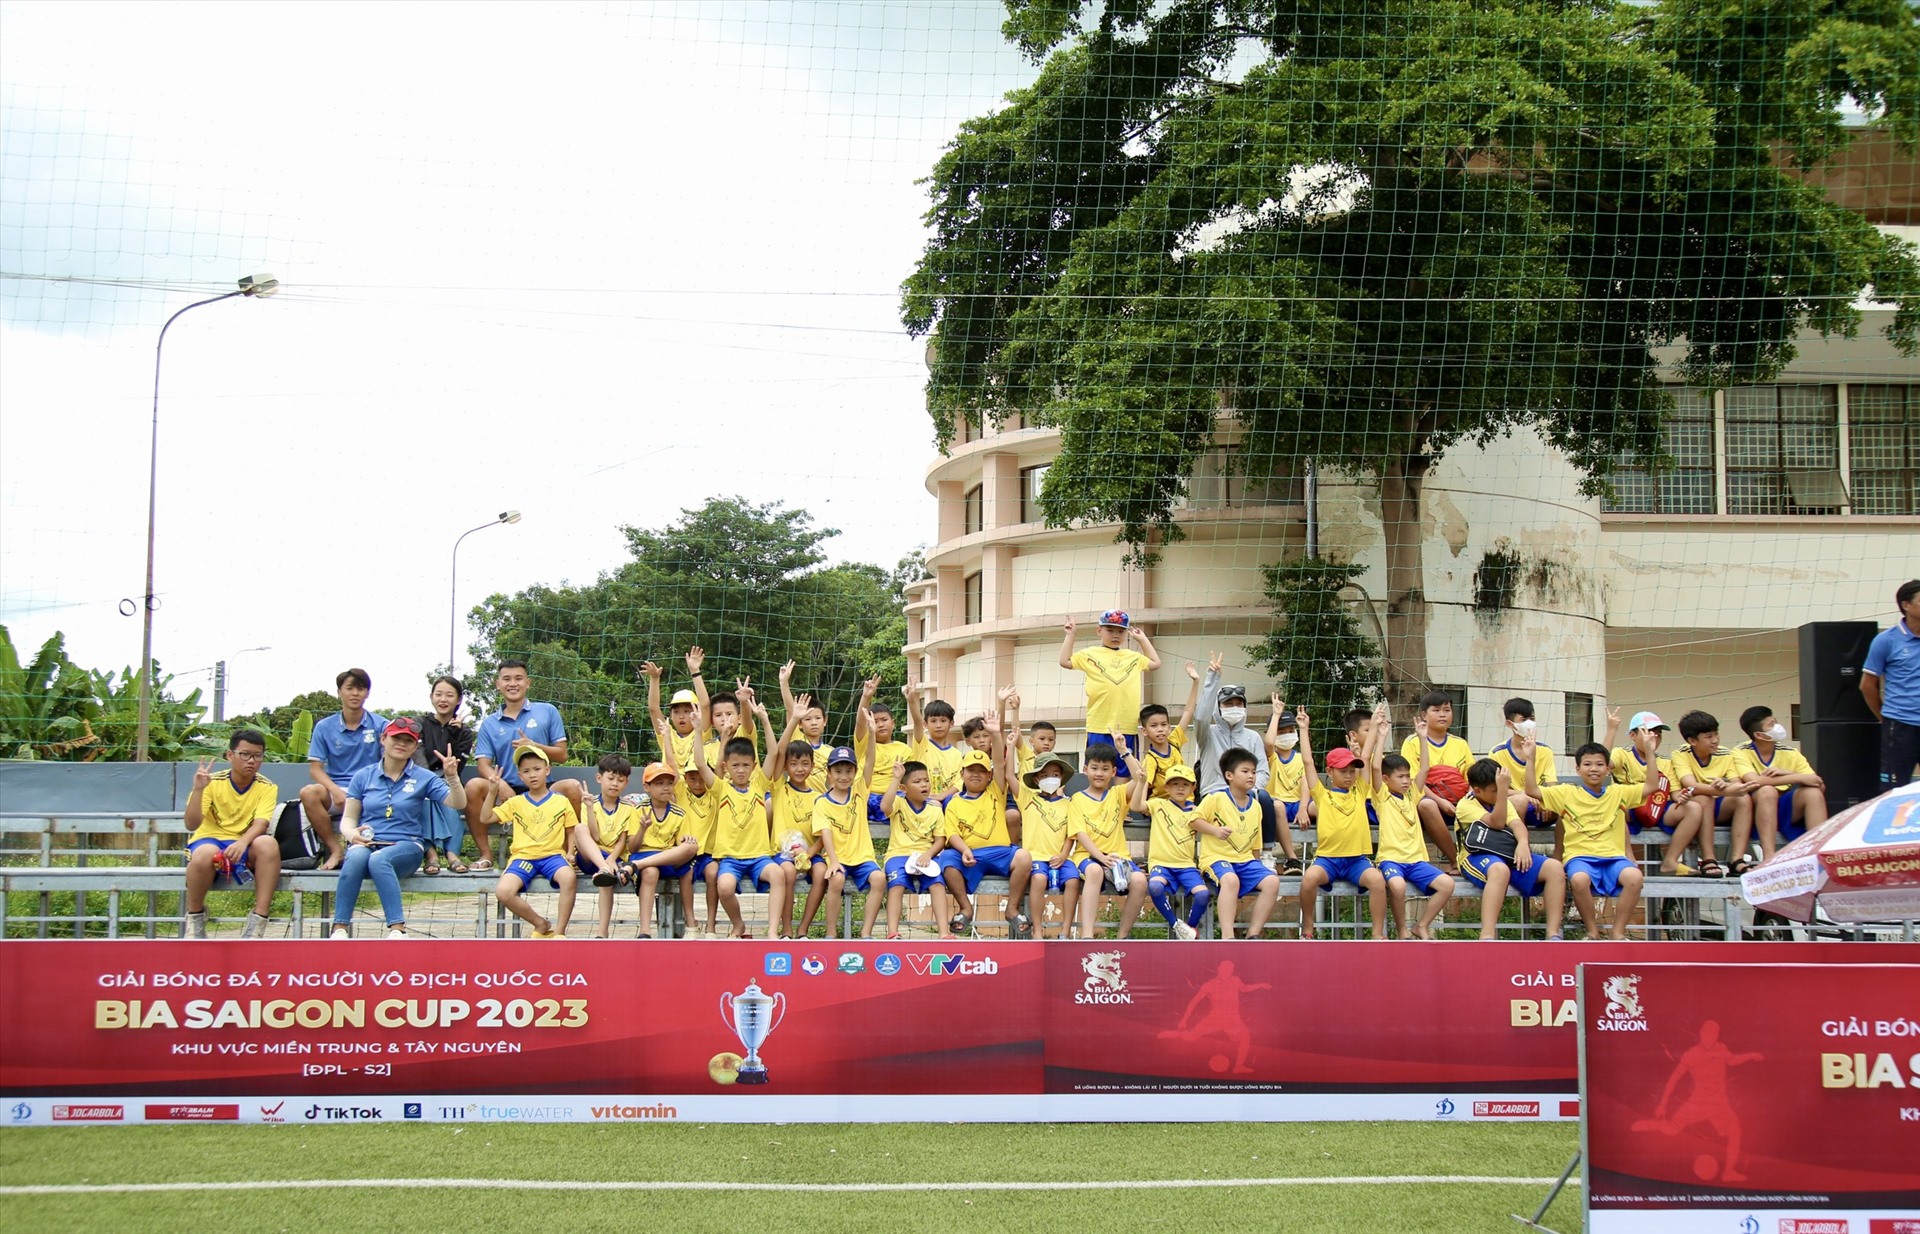 Mùa giải thứ 2 giải bóng đá 7 người chính thức khởi tranh tại Đắk Lắk. Ảnh: Bảo Trung